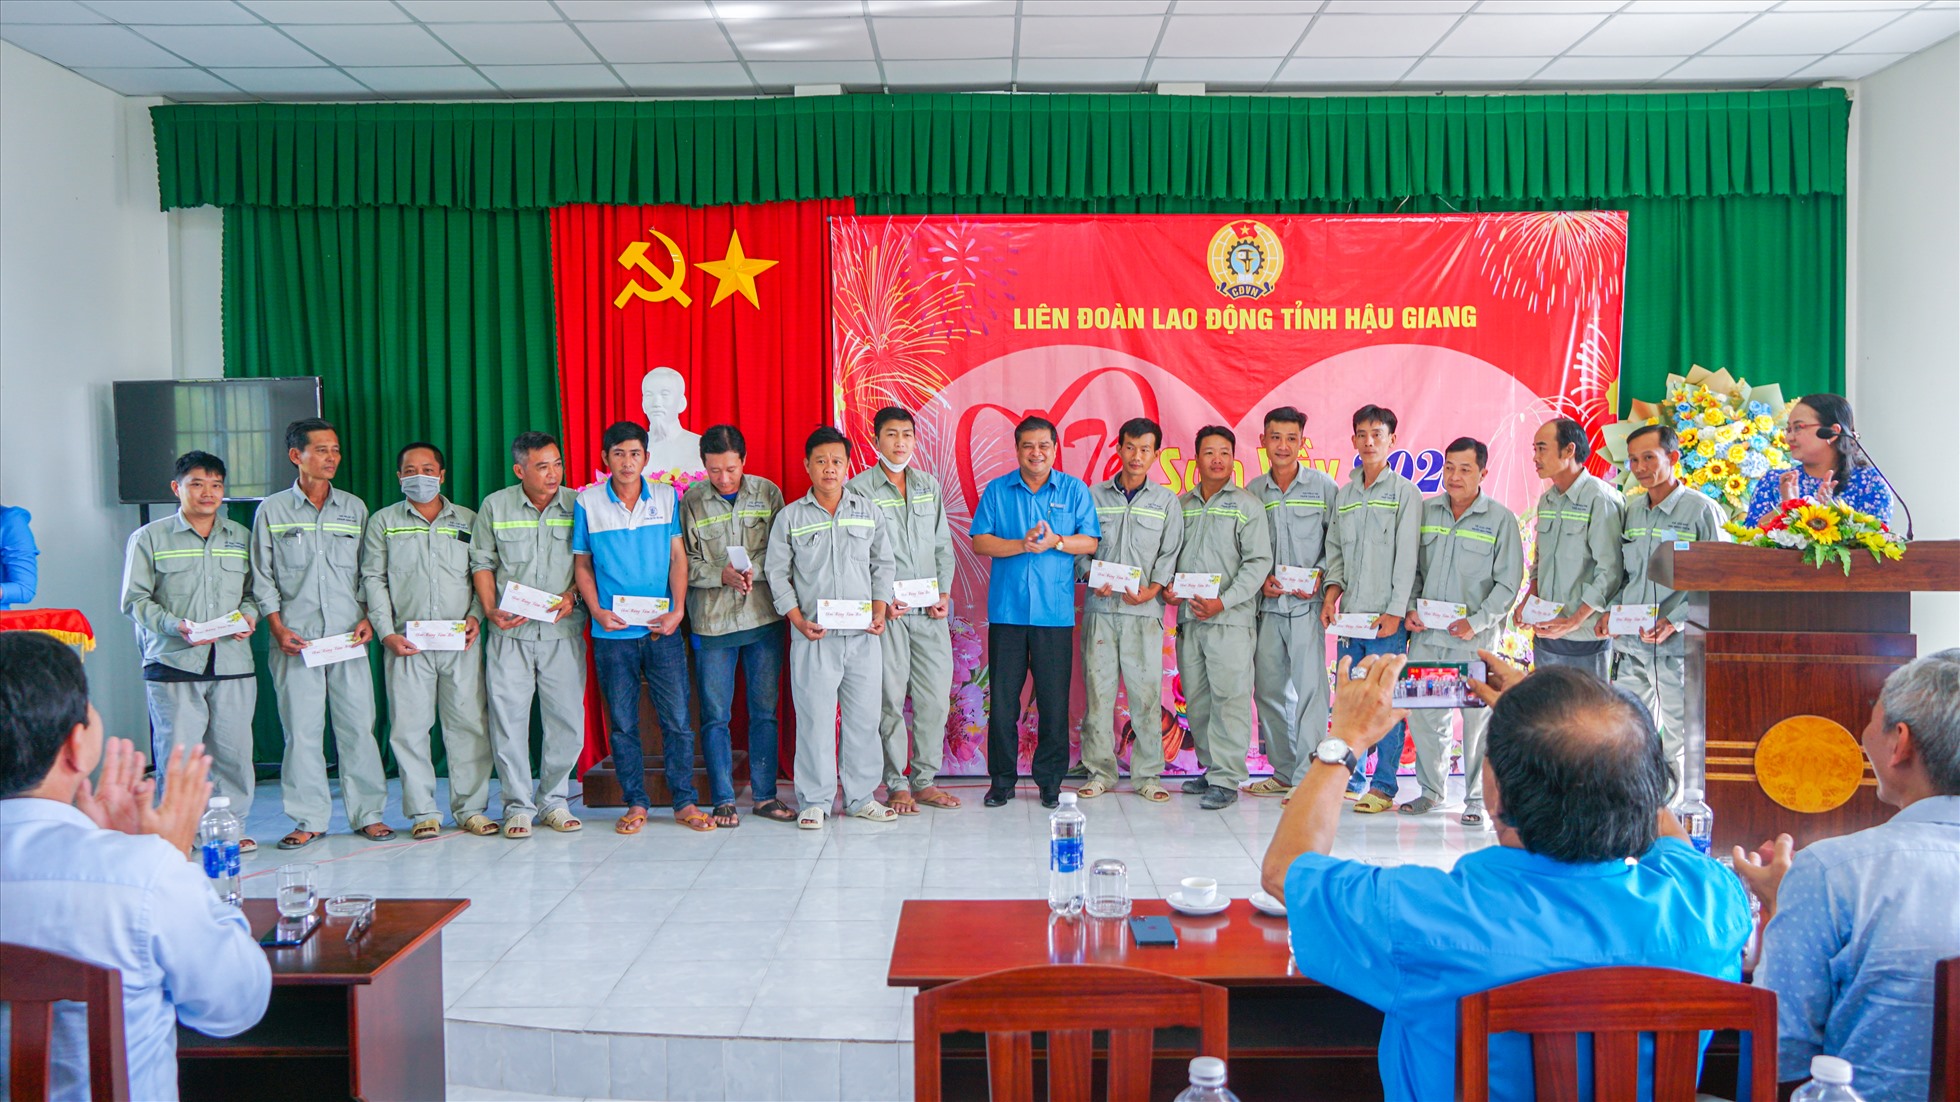 Chủ tịch LĐLĐ tỉnh Hậu Giang Nguyễn Văn Bảy trao quà cho đoàn viên, người lao động. Ảnh: Tạ Quang.